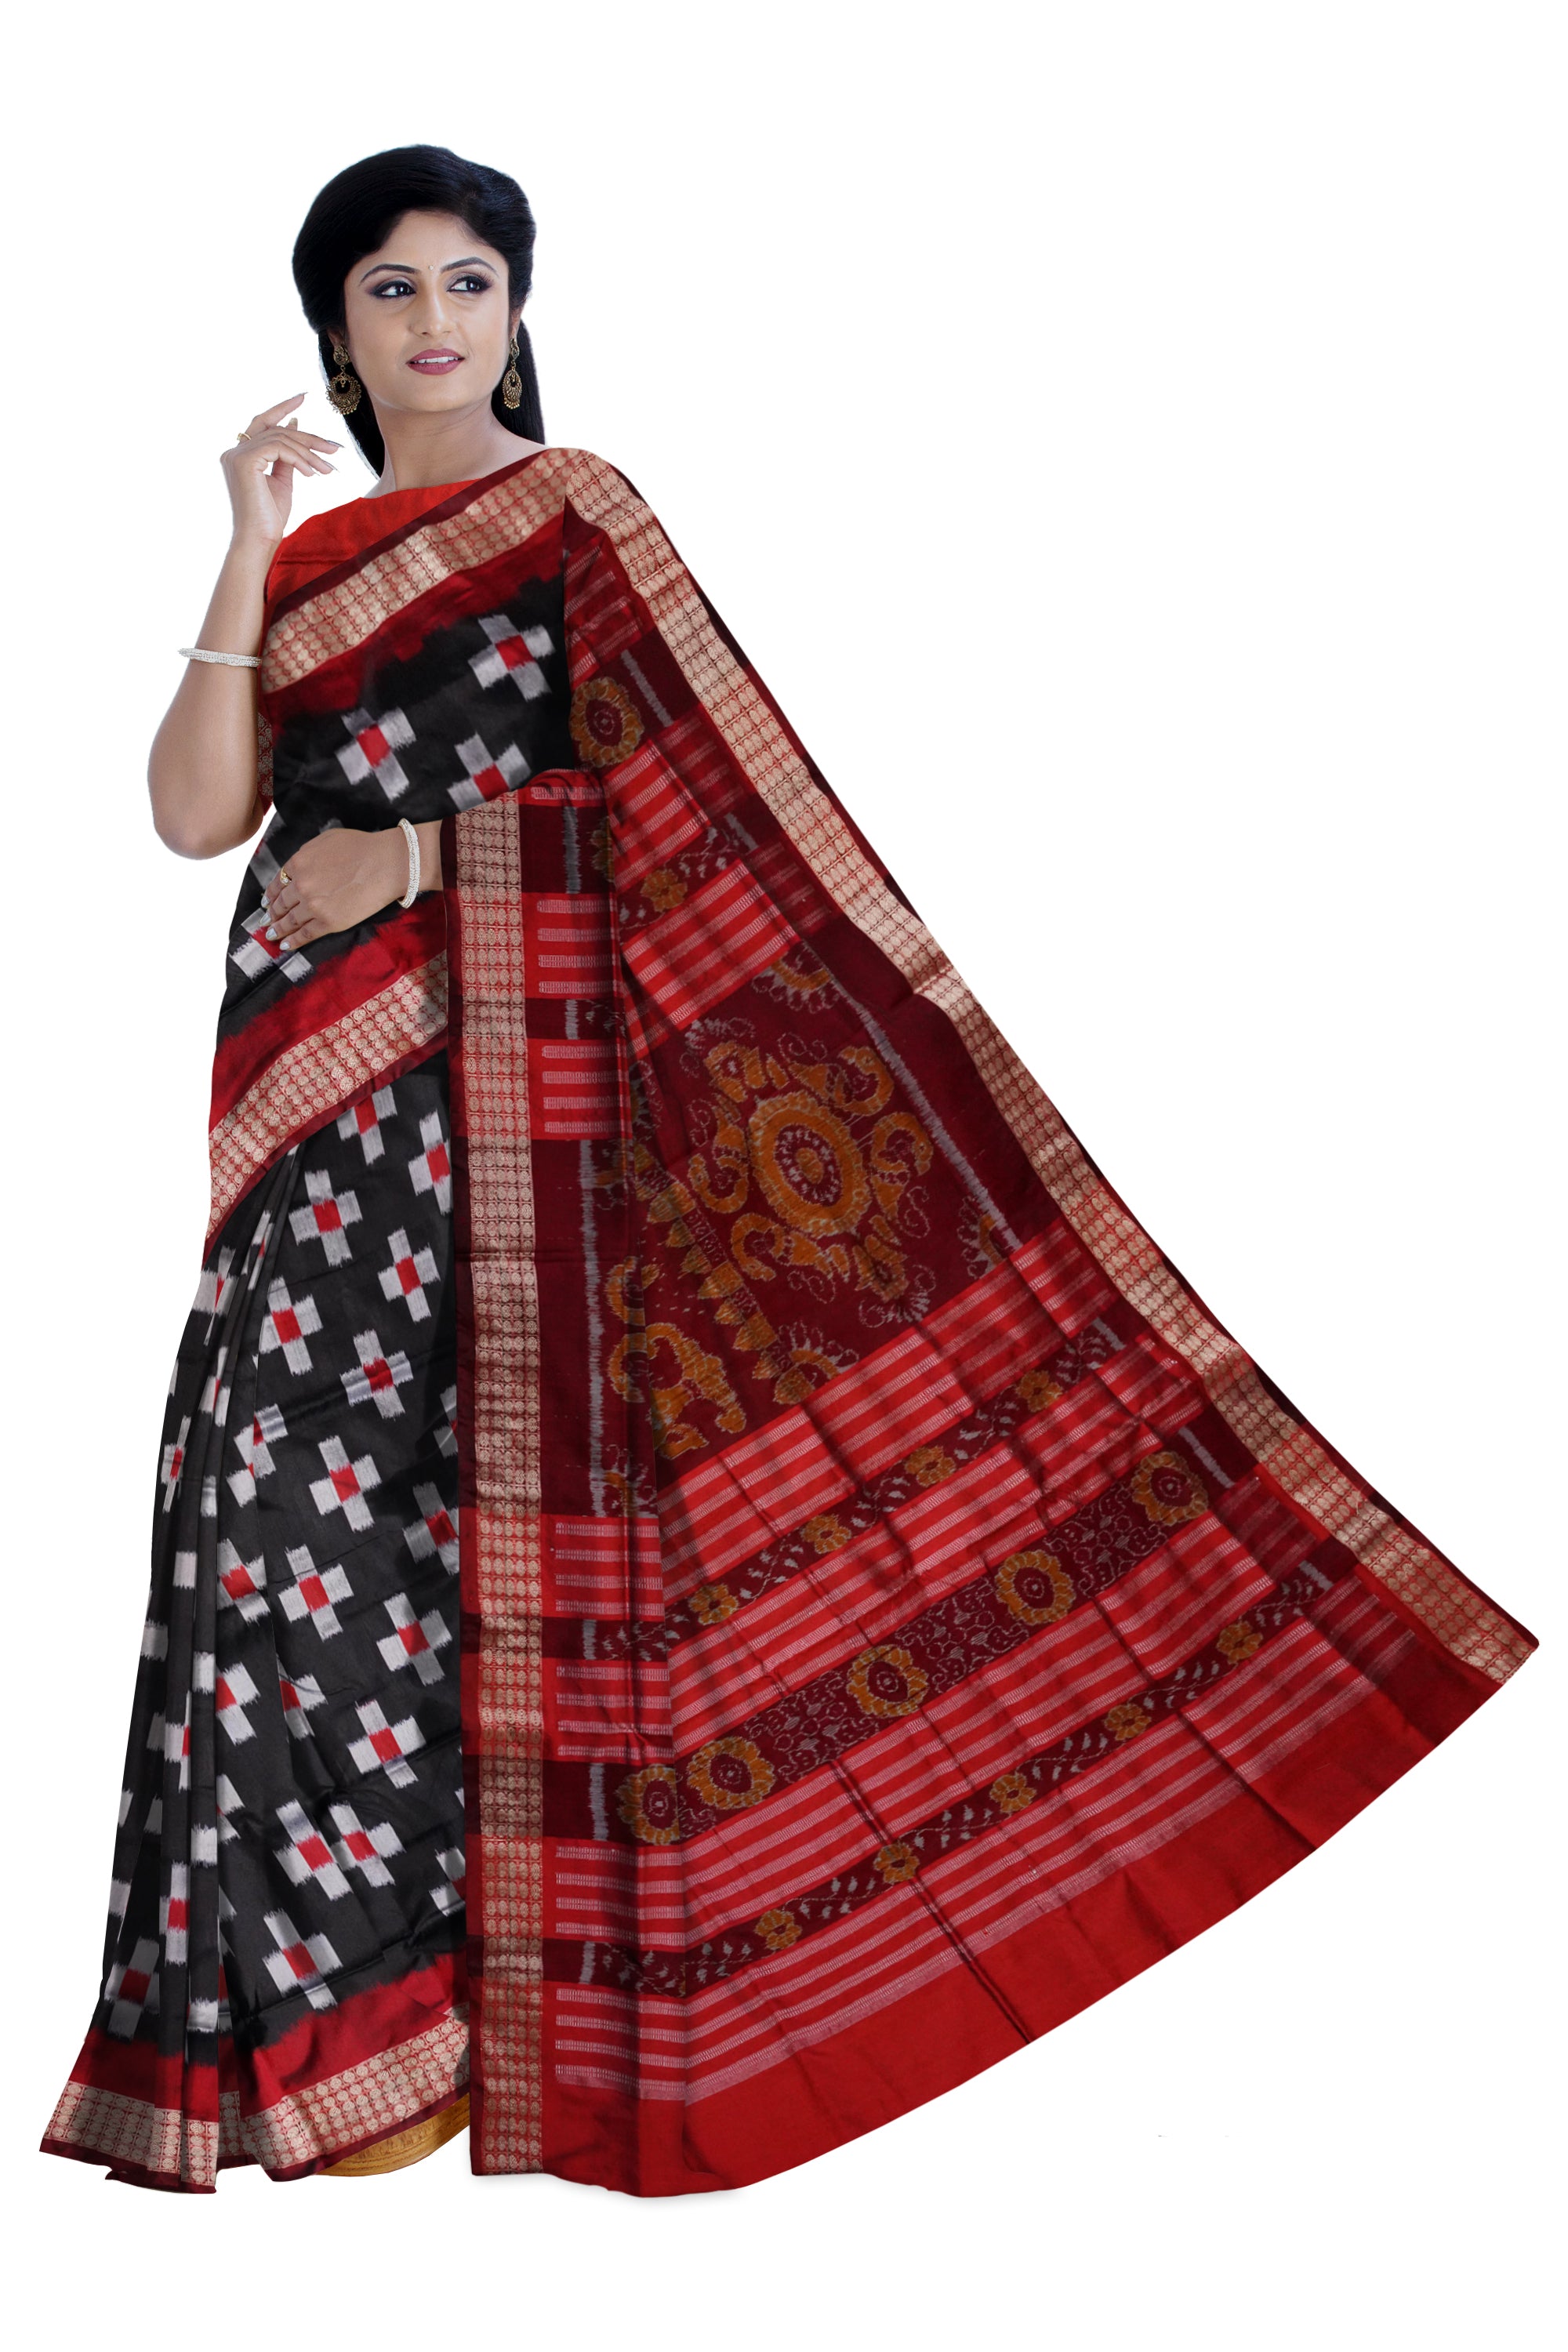 Black and Maroon color tara pattern pata saree. - Koshali Arts & Crafts Enterprise